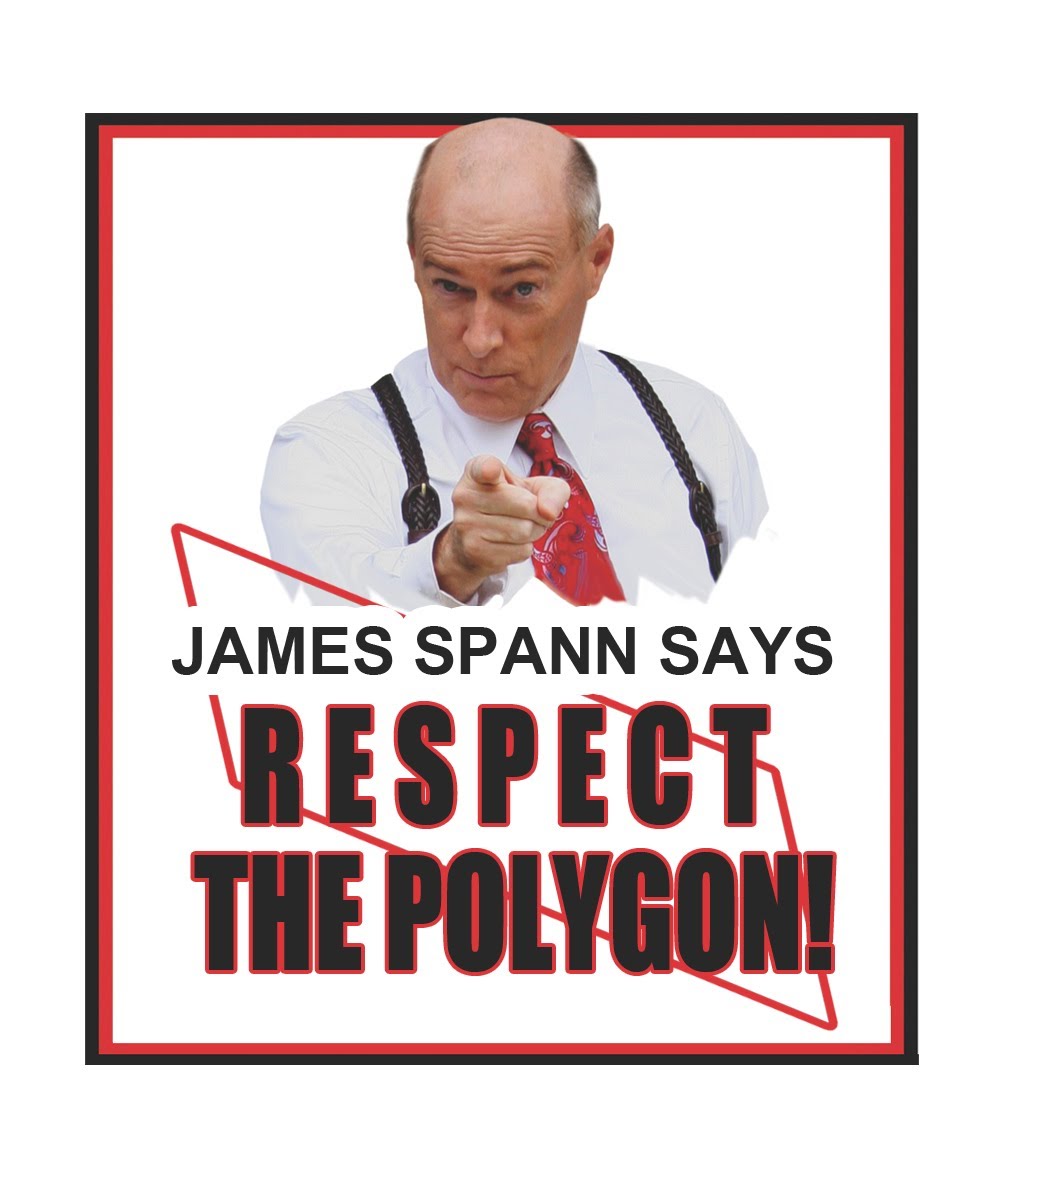 James Spann respect the polygon